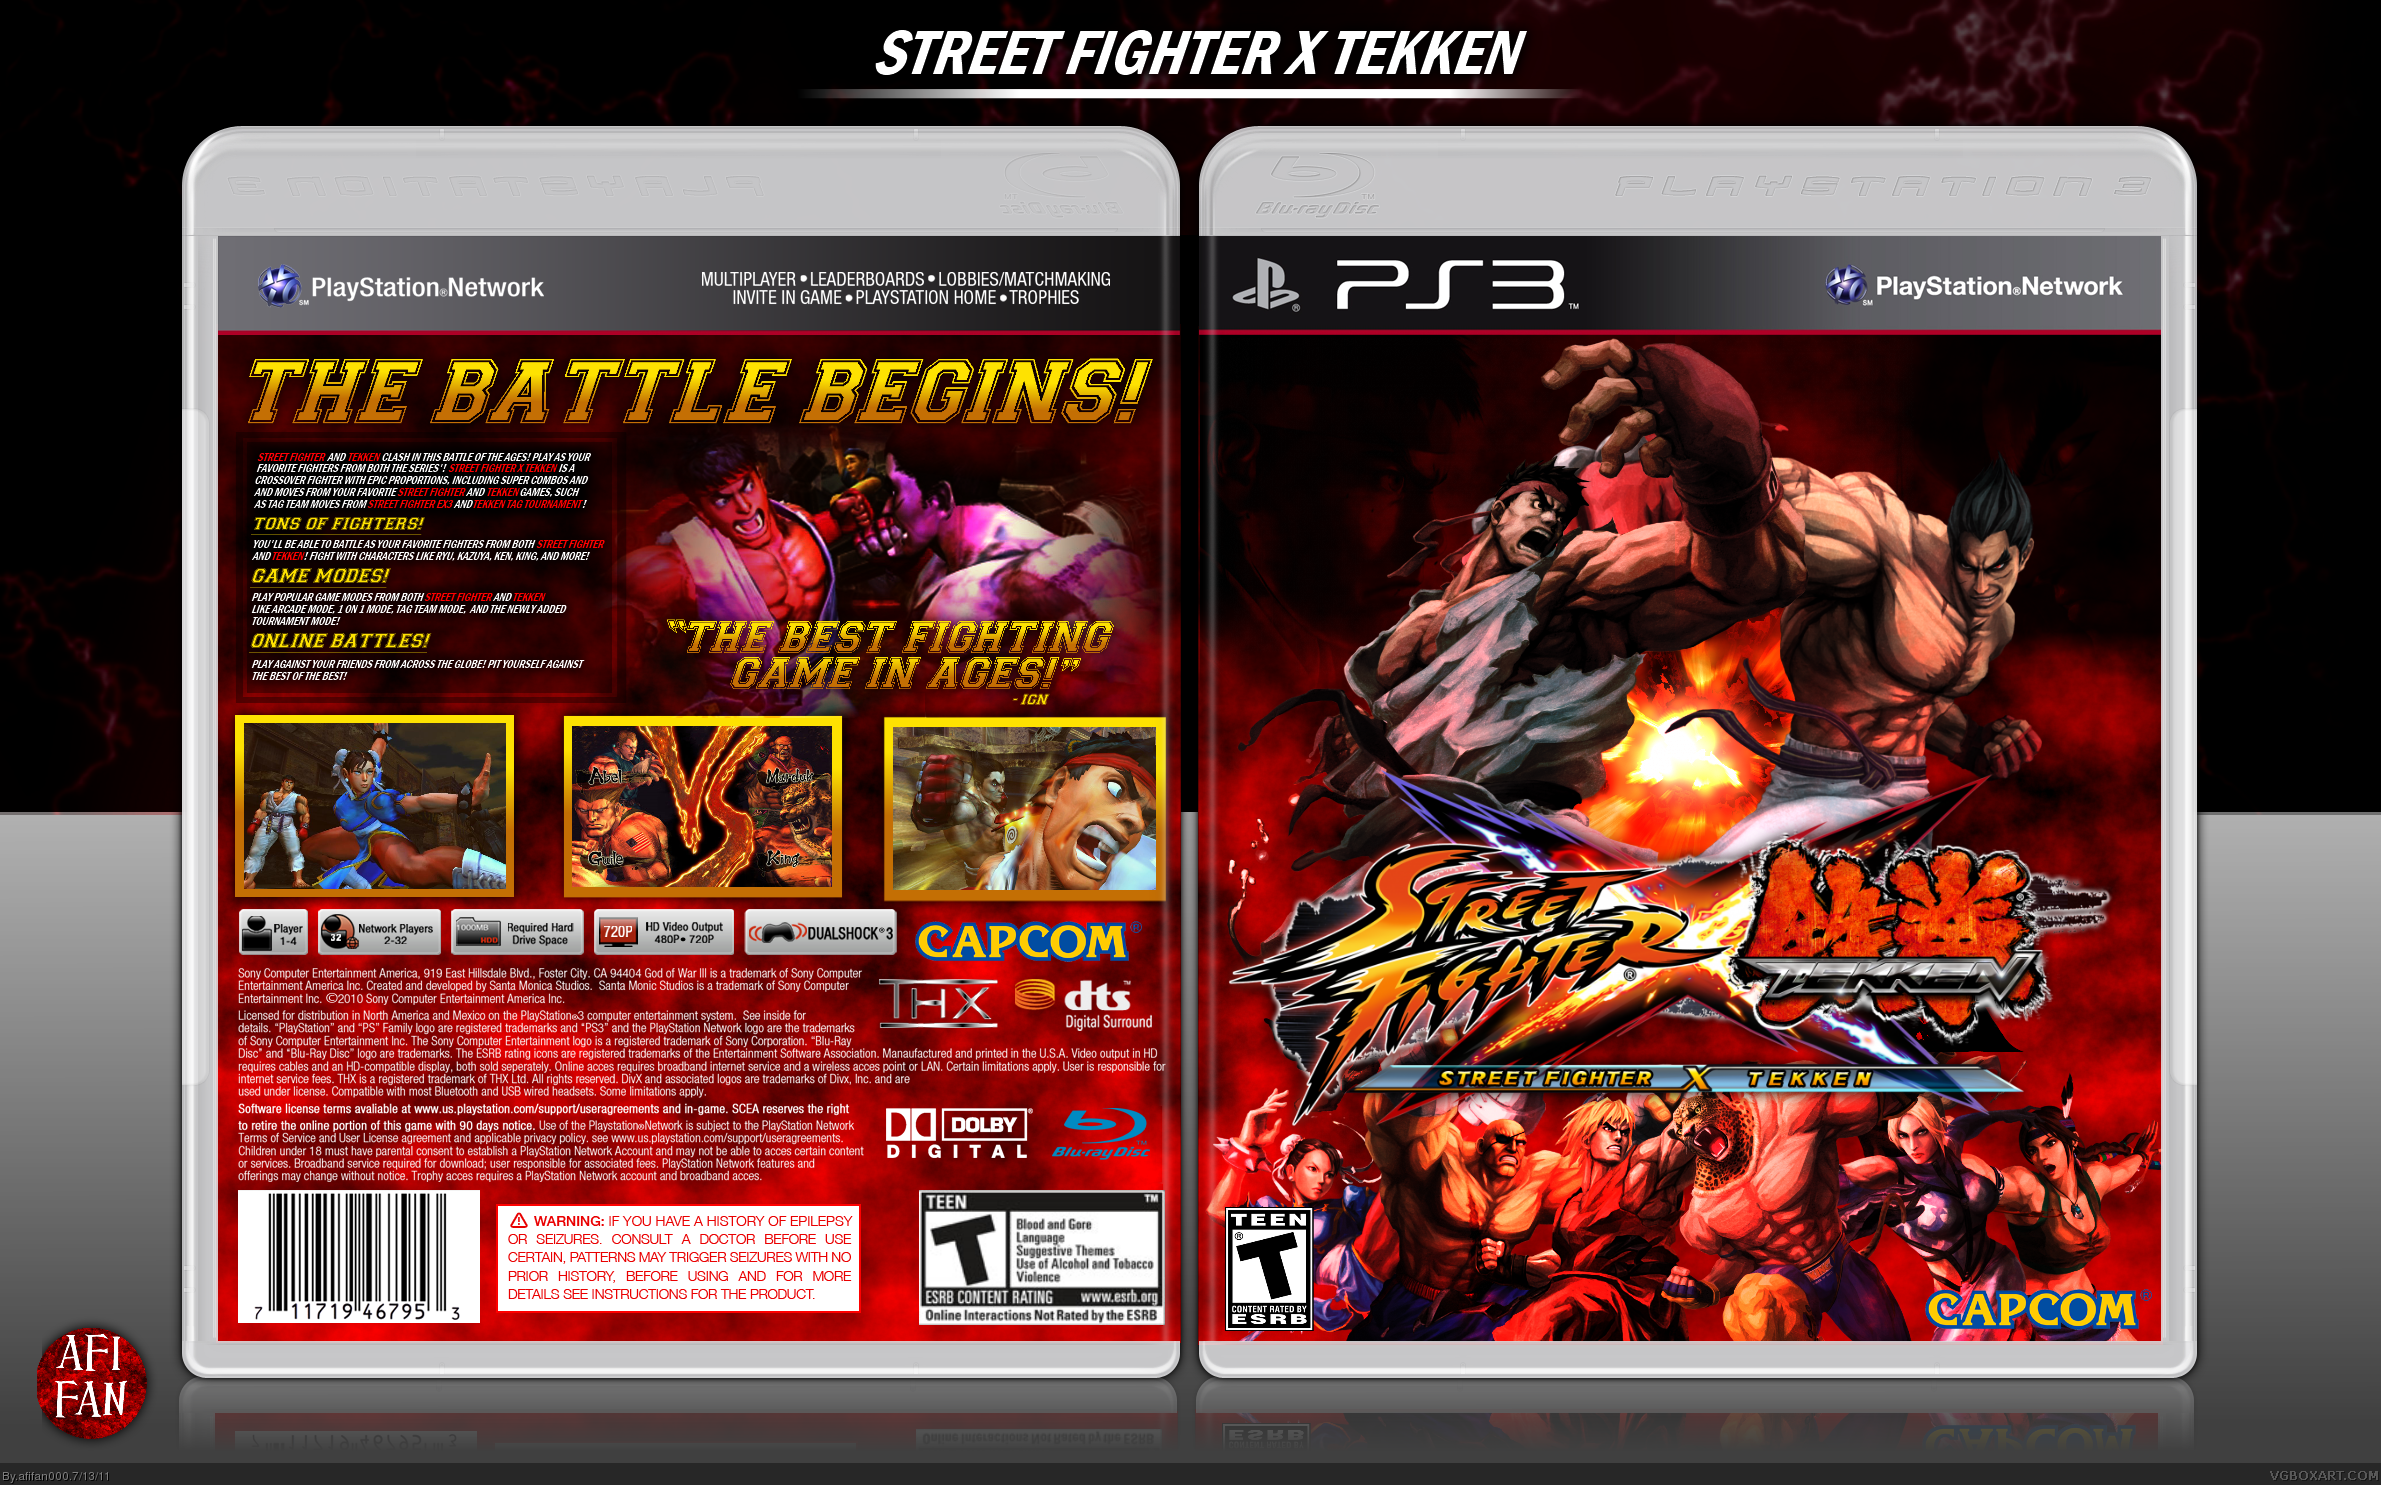 Street Fighter x Tekken box cover